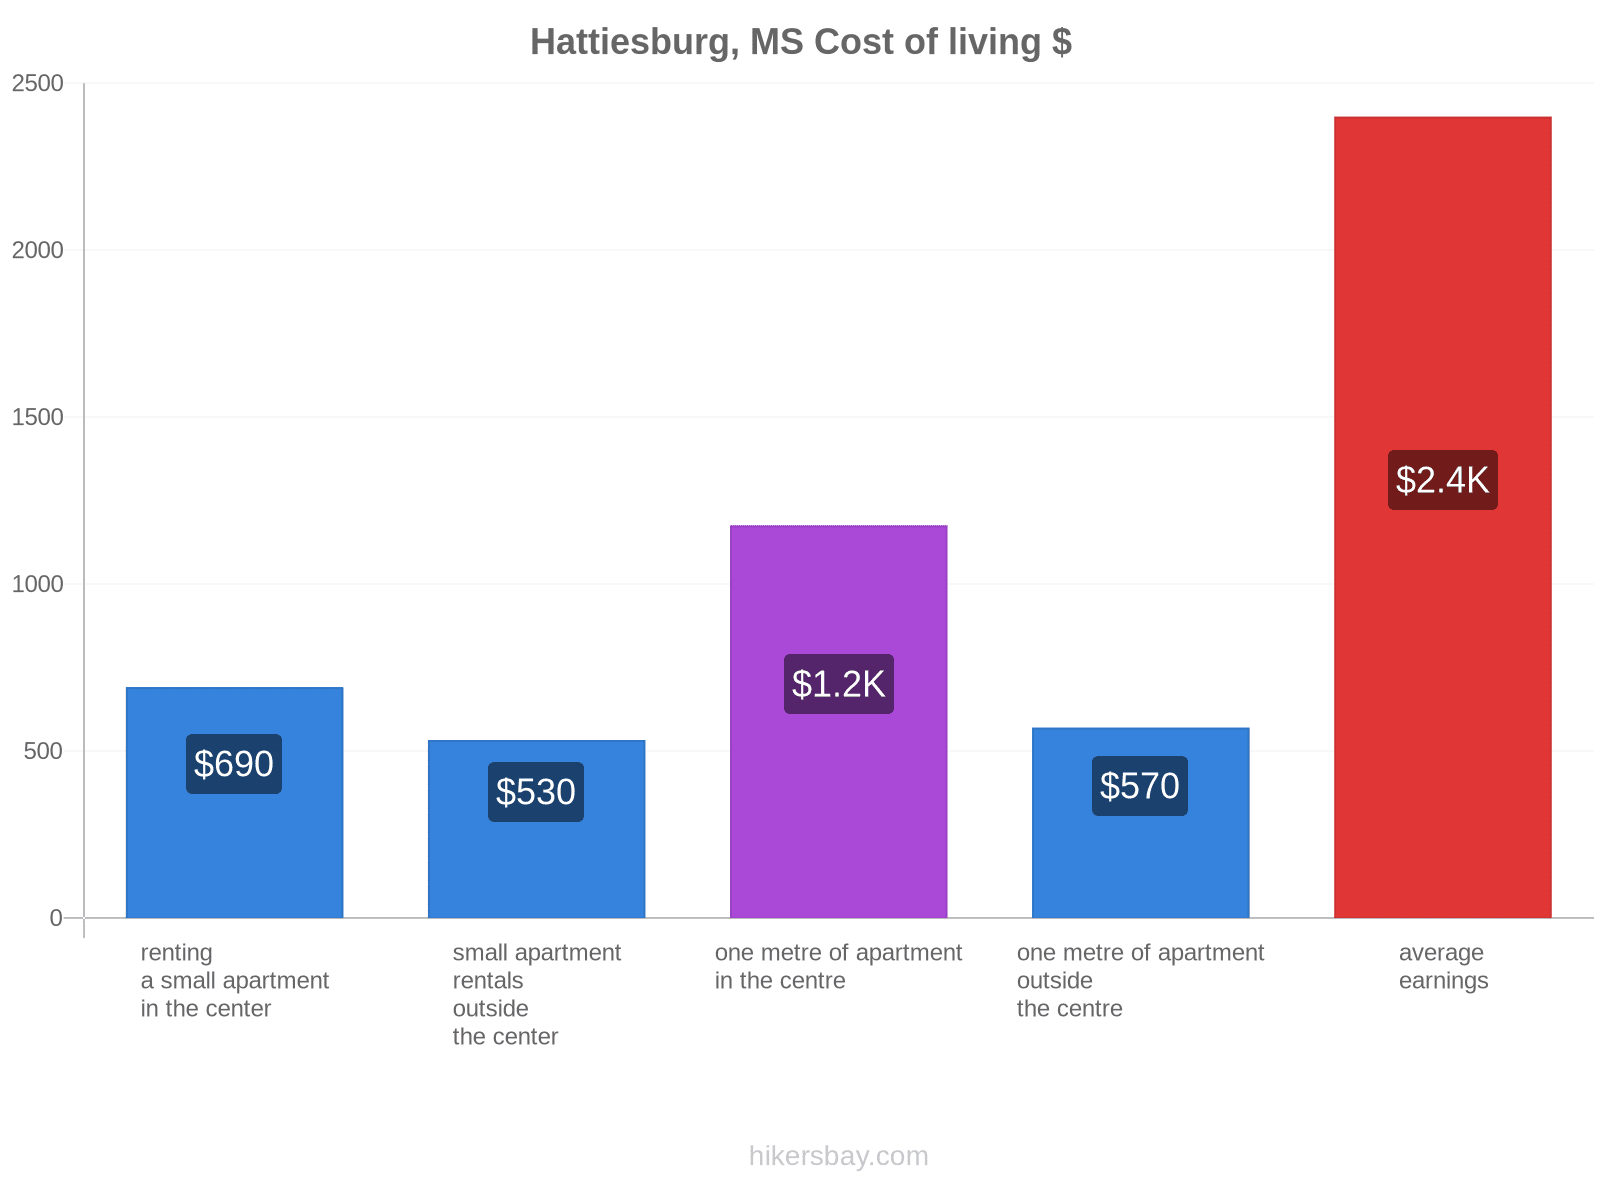 Hattiesburg, MS cost of living hikersbay.com